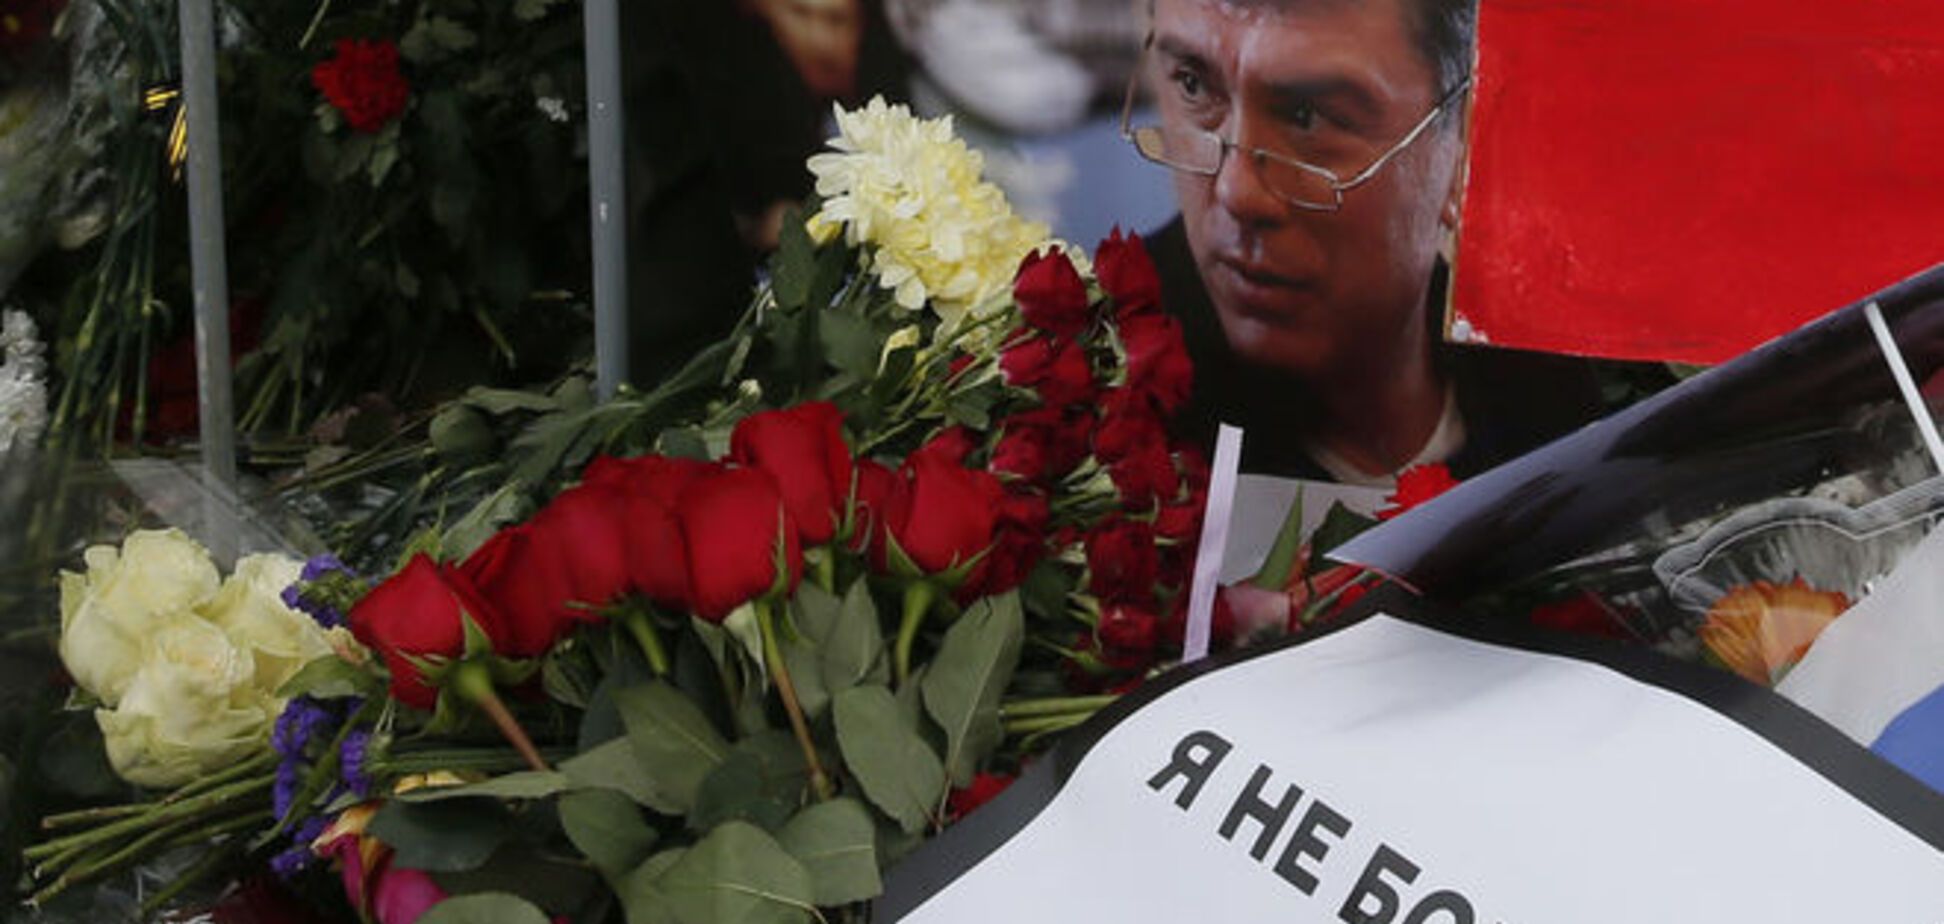 Одна из возможных версий развития событий вокруг убийства Немцова